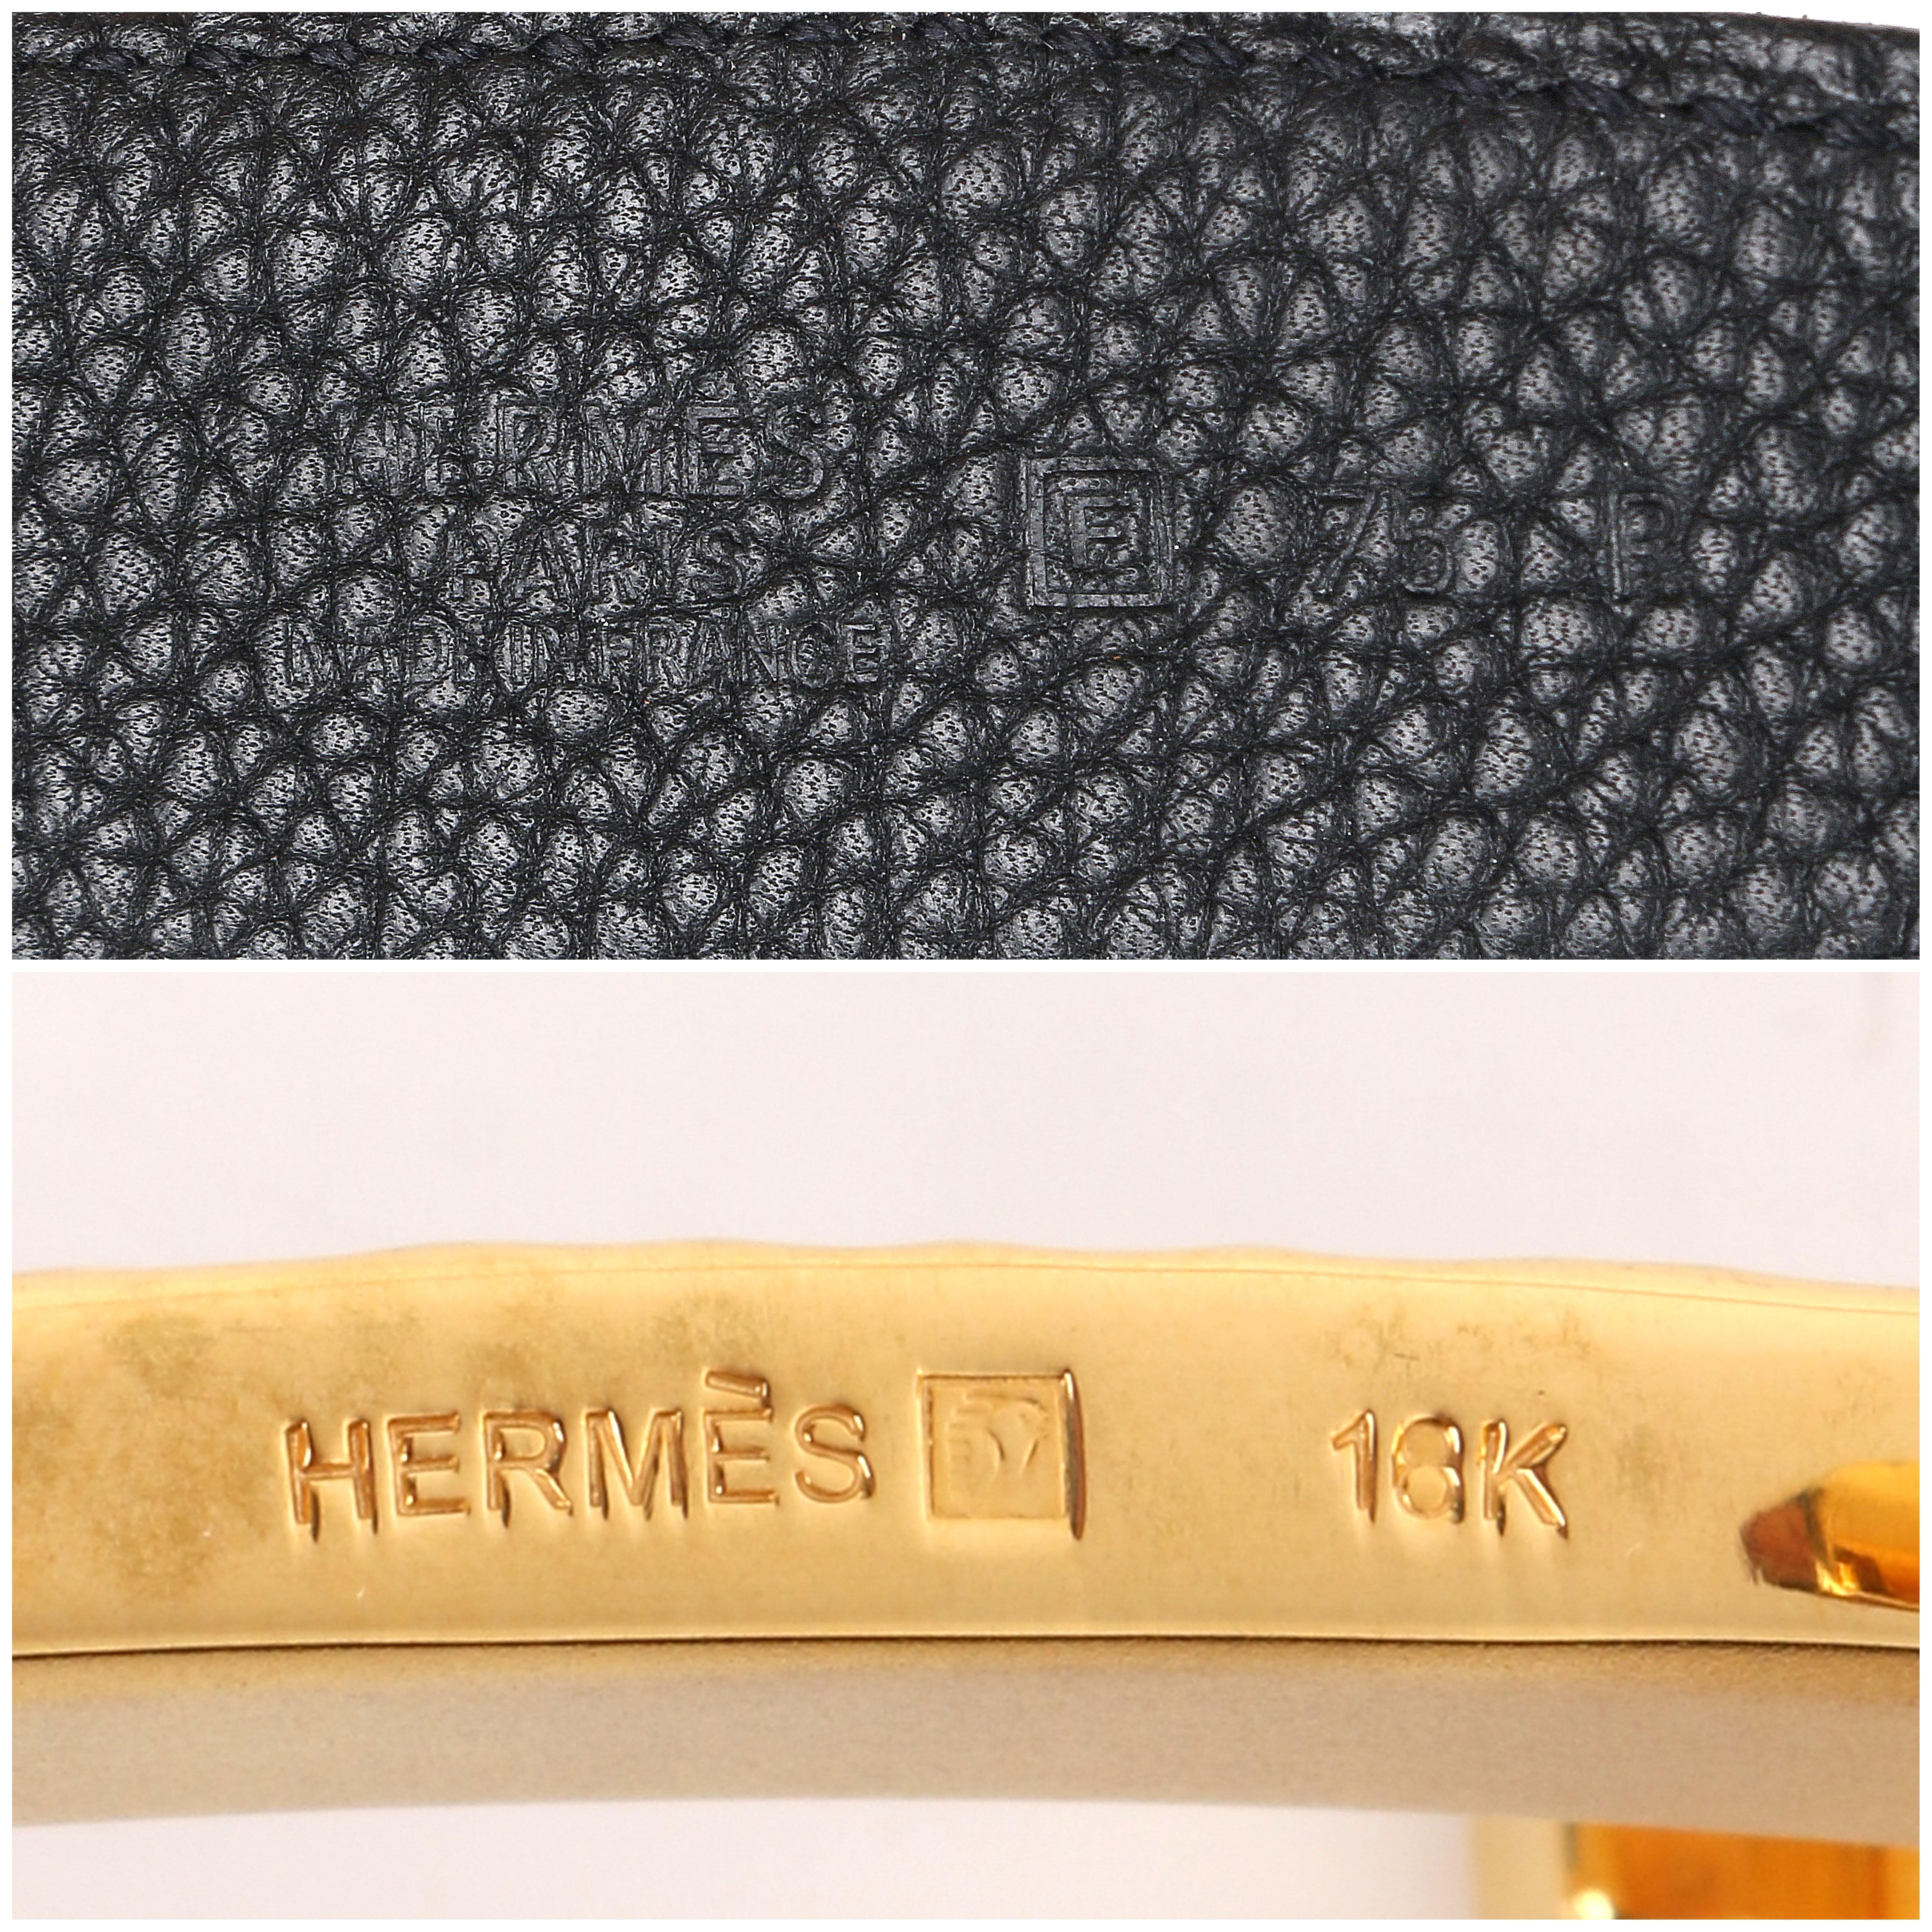 hermes 18k belt